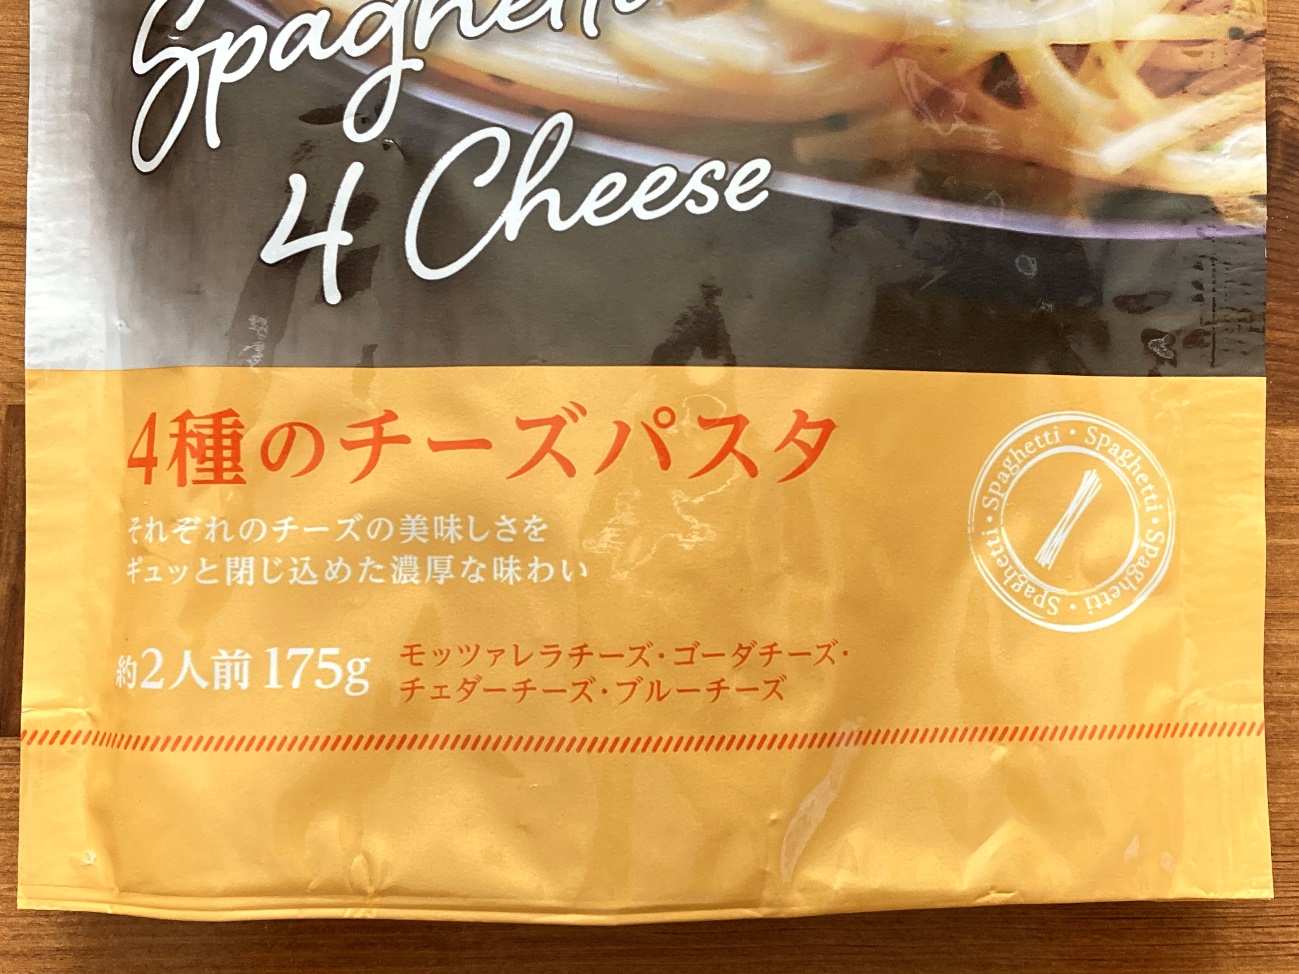 業務スーパーの4種のチーズパスタのパッケージにある商品名の表記